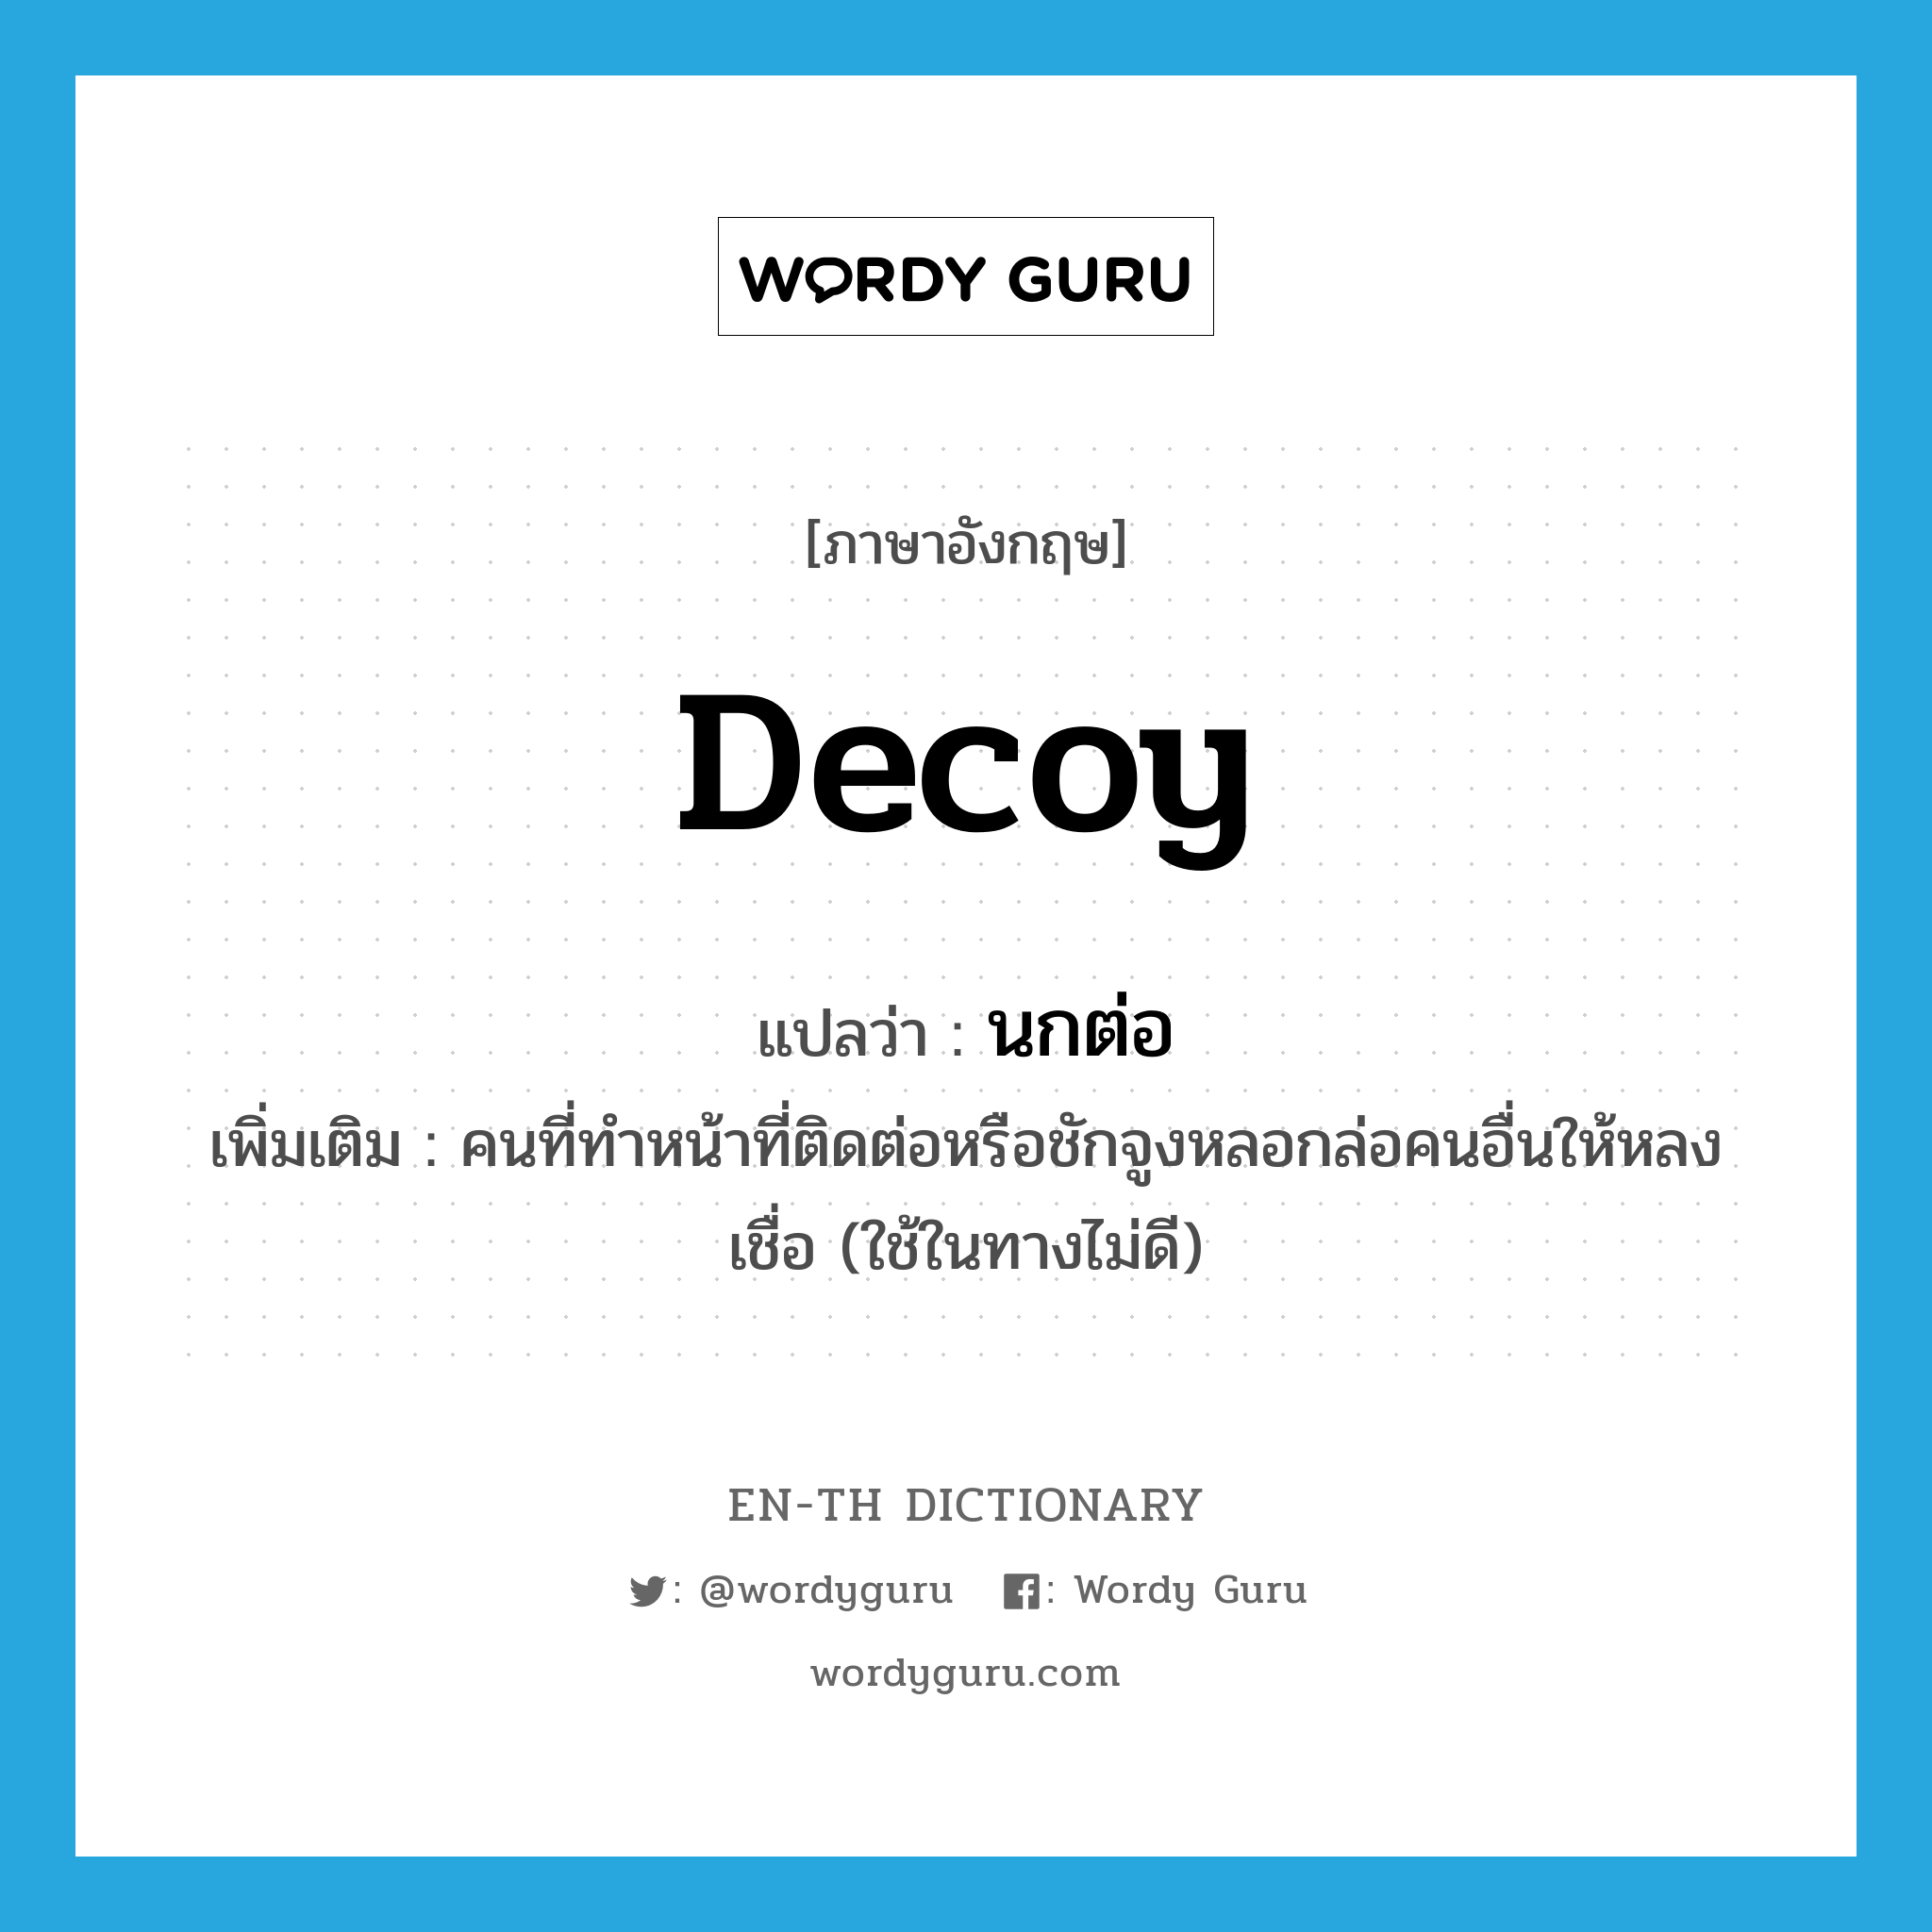 decoy แปลว่า?, คำศัพท์ภาษาอังกฤษ decoy แปลว่า นกต่อ ประเภท N เพิ่มเติม คนที่ทำหน้าที่ติดต่อหรือชักจูงหลอกล่อคนอื่นให้หลงเชื่อ (ใช้ในทางไม่ดี) หมวด N